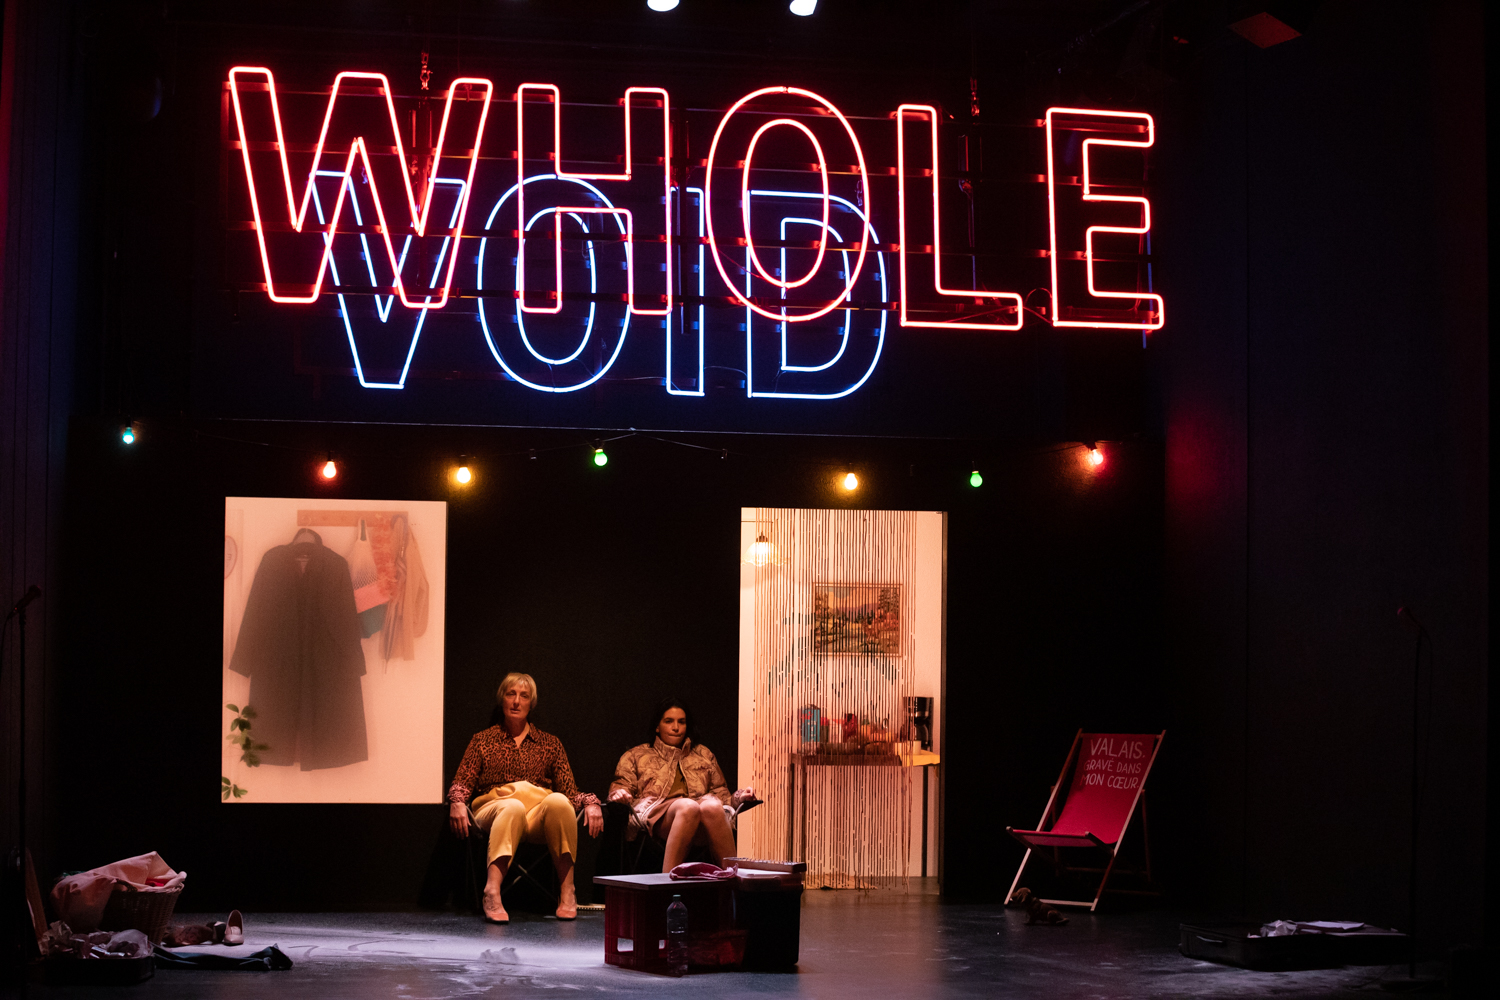 Photo représentant un moment de la pièce. Deux comédiennes sont assises en fond de scène sous des mots écrits en néon rouge et bleu. Elles attendent. Photo prise par Rebecca Bowring